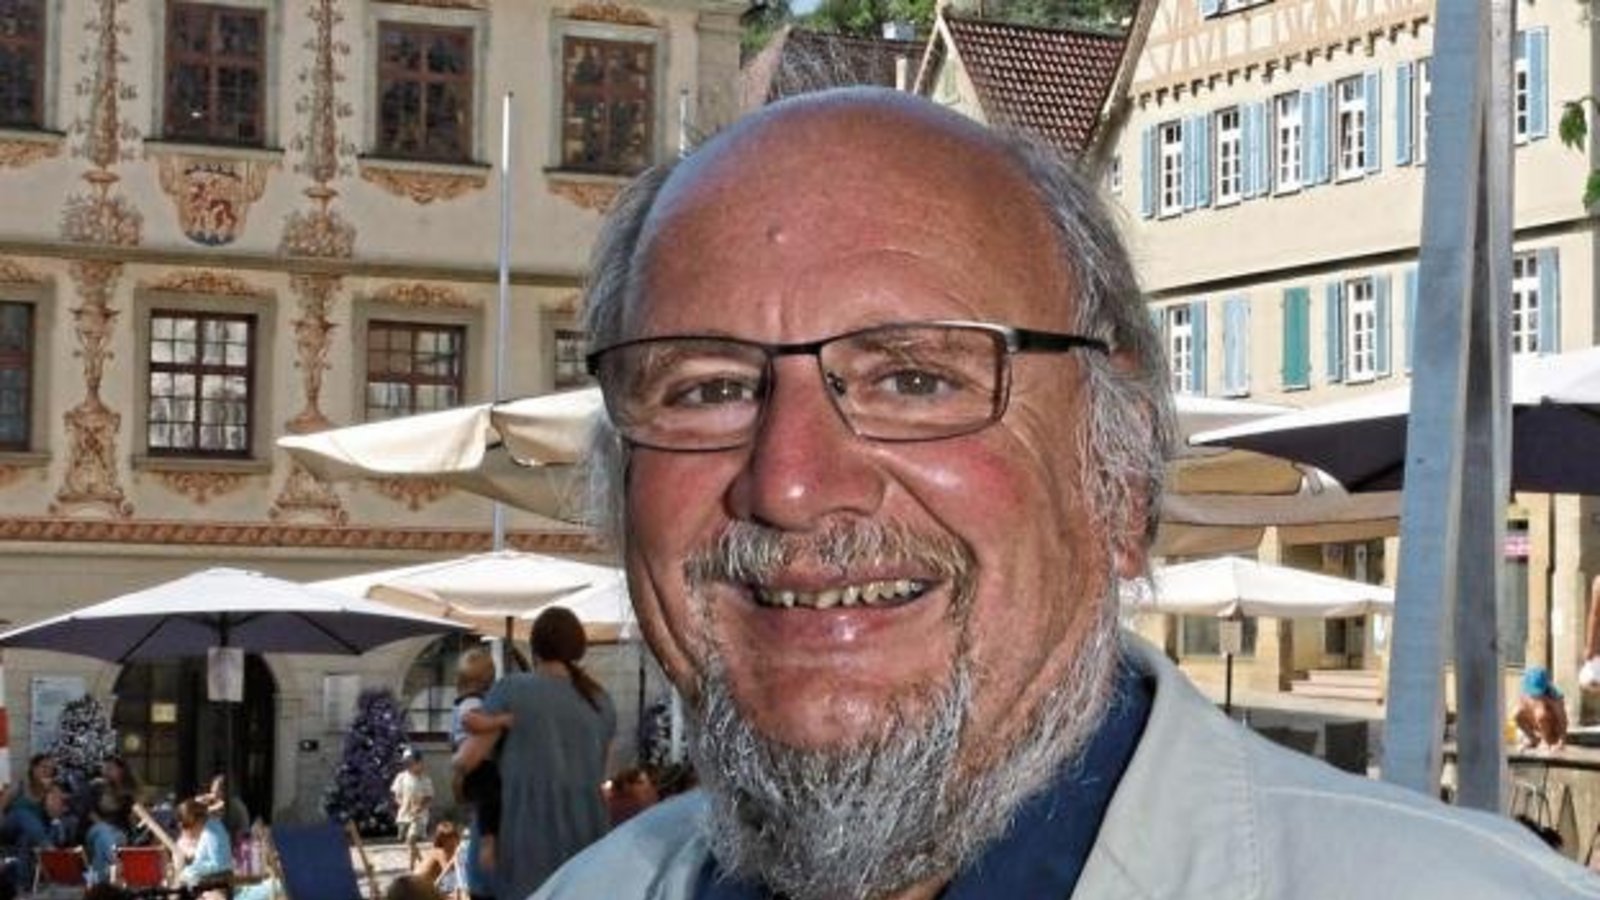 Peter Schimke (63) ist der Bundestagskandidat der Linken für den Wahlkreis Ludwigsburg. Als „Lieblingsbild“ hat er eine Aufnahme geschickt, die bei einem Ausflug an die Triberger Wasserfälle im Schwarzwald entstanden ist (Bild rechts). Zu sehen ist von li